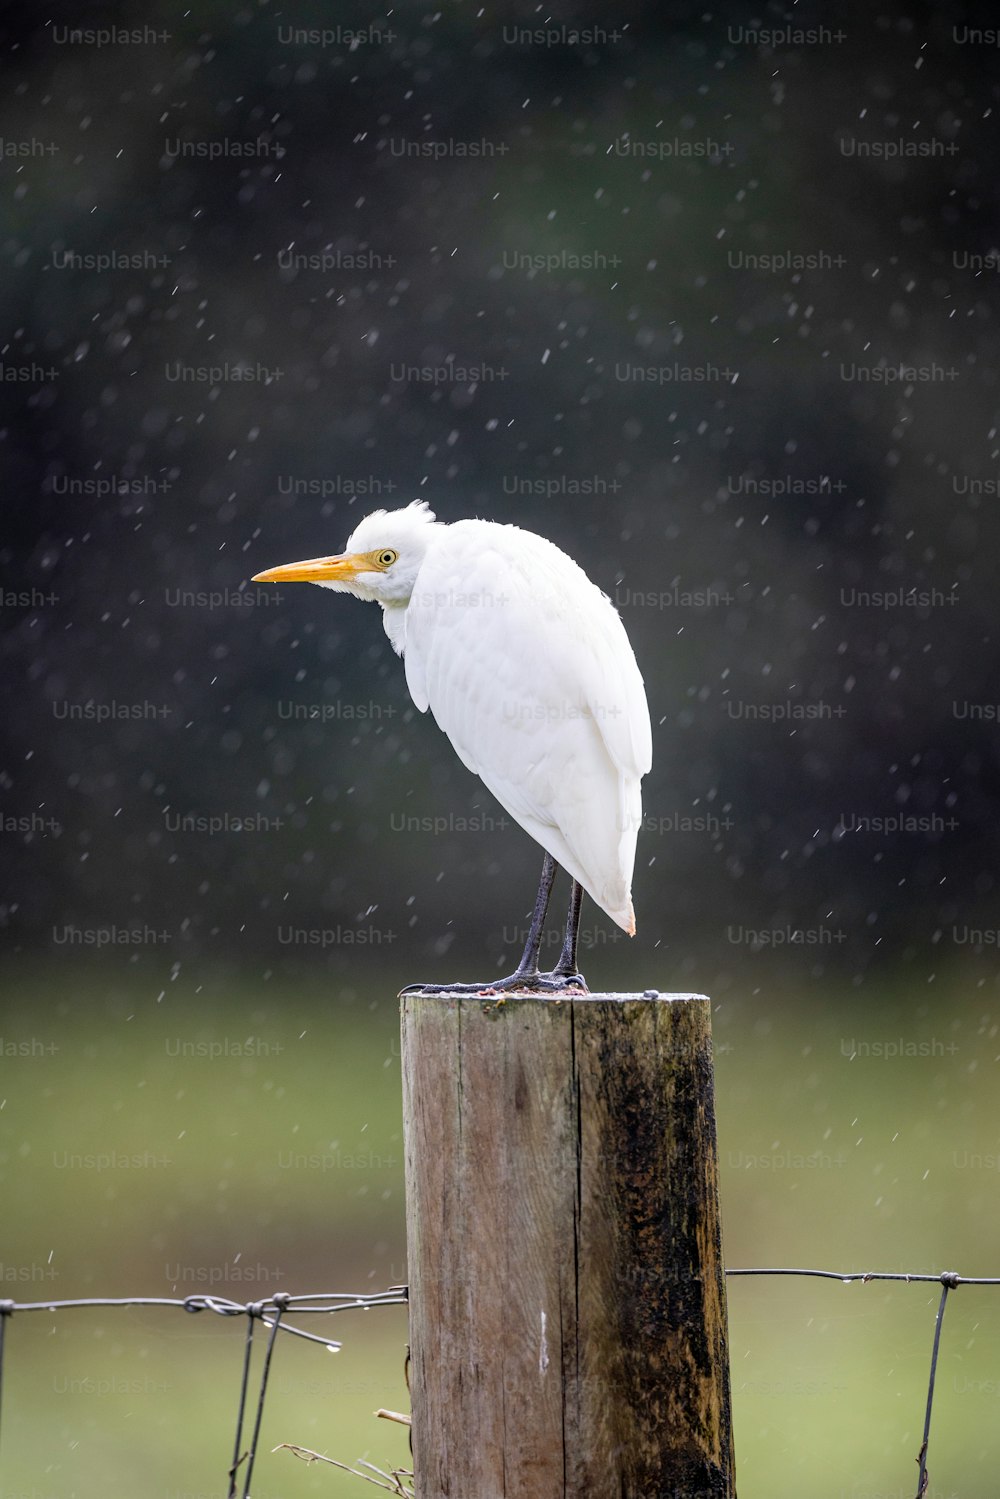 나무 기둥 위에 앉아 있는 하얀 새